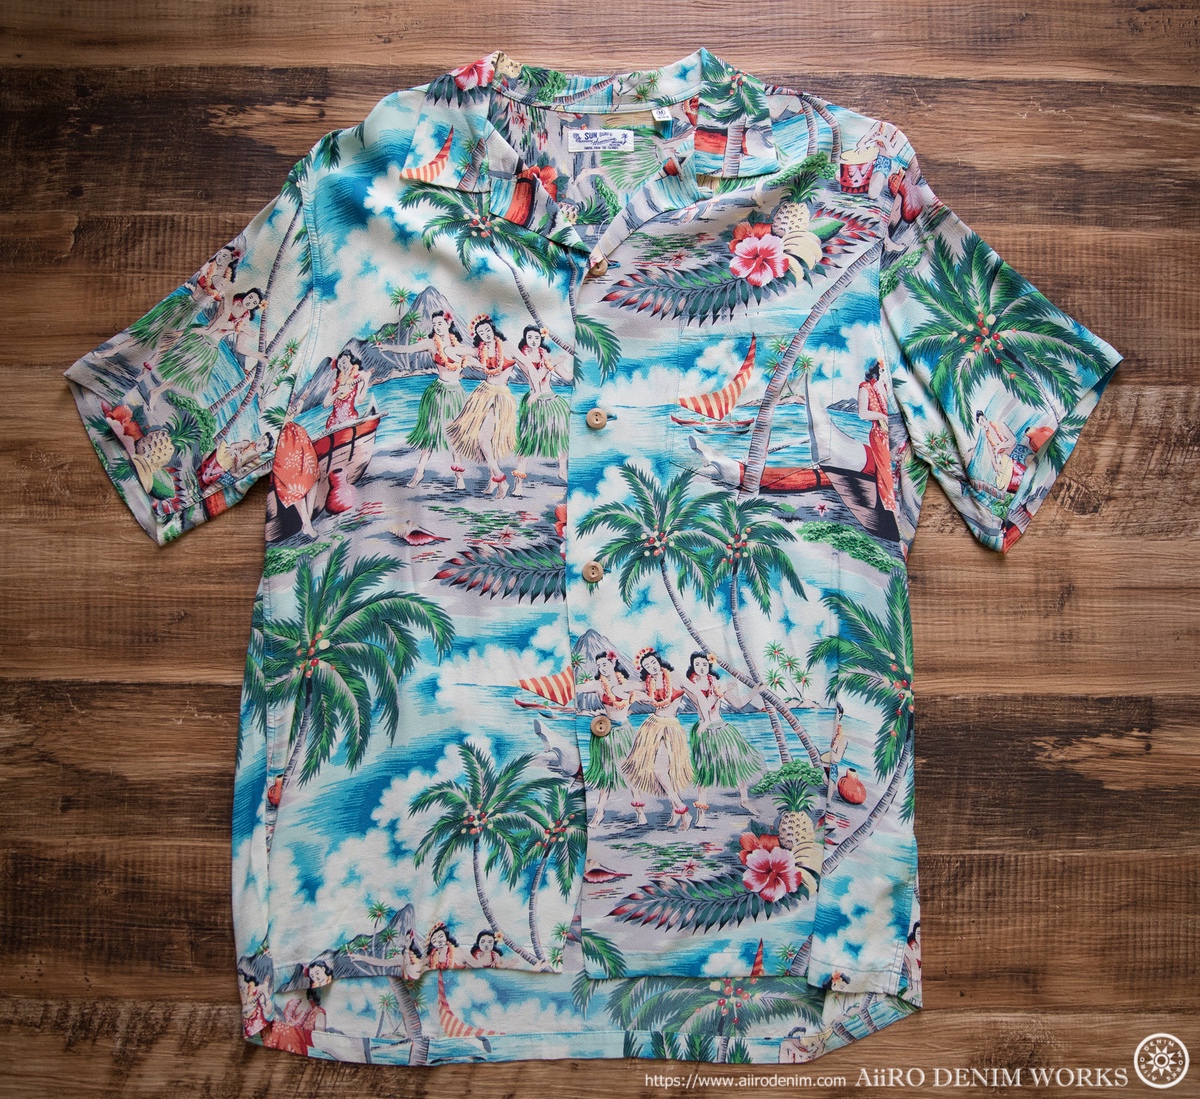 アロハシャツの季節にコスパ抜群の本場ハワイのブランド『Avanti』という選択肢 | AiiRO DENIM WORKS